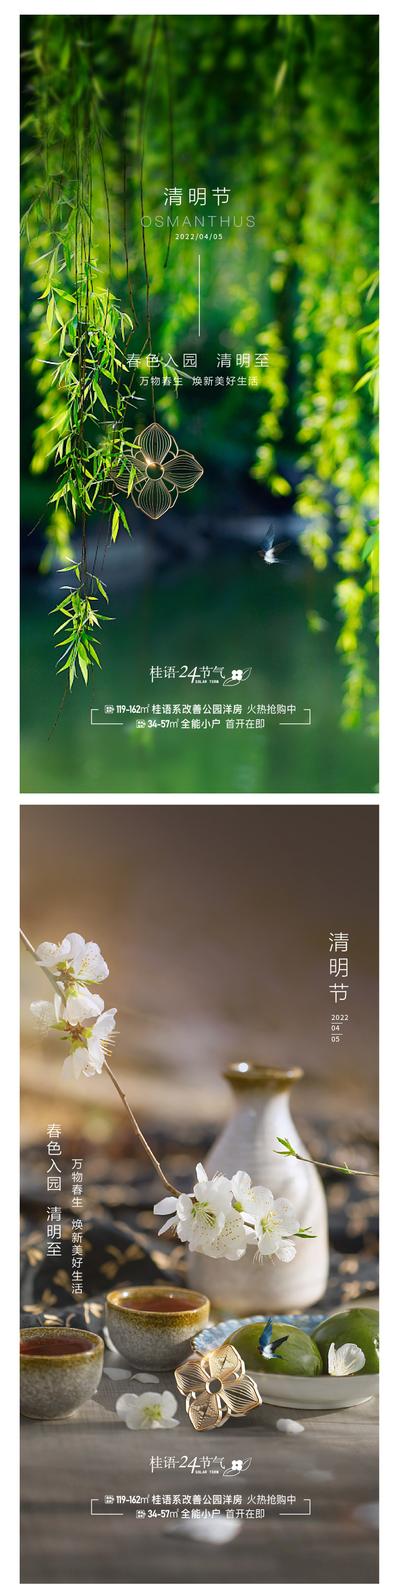 南门网 广告 海报 节日 清明节 春天 系列